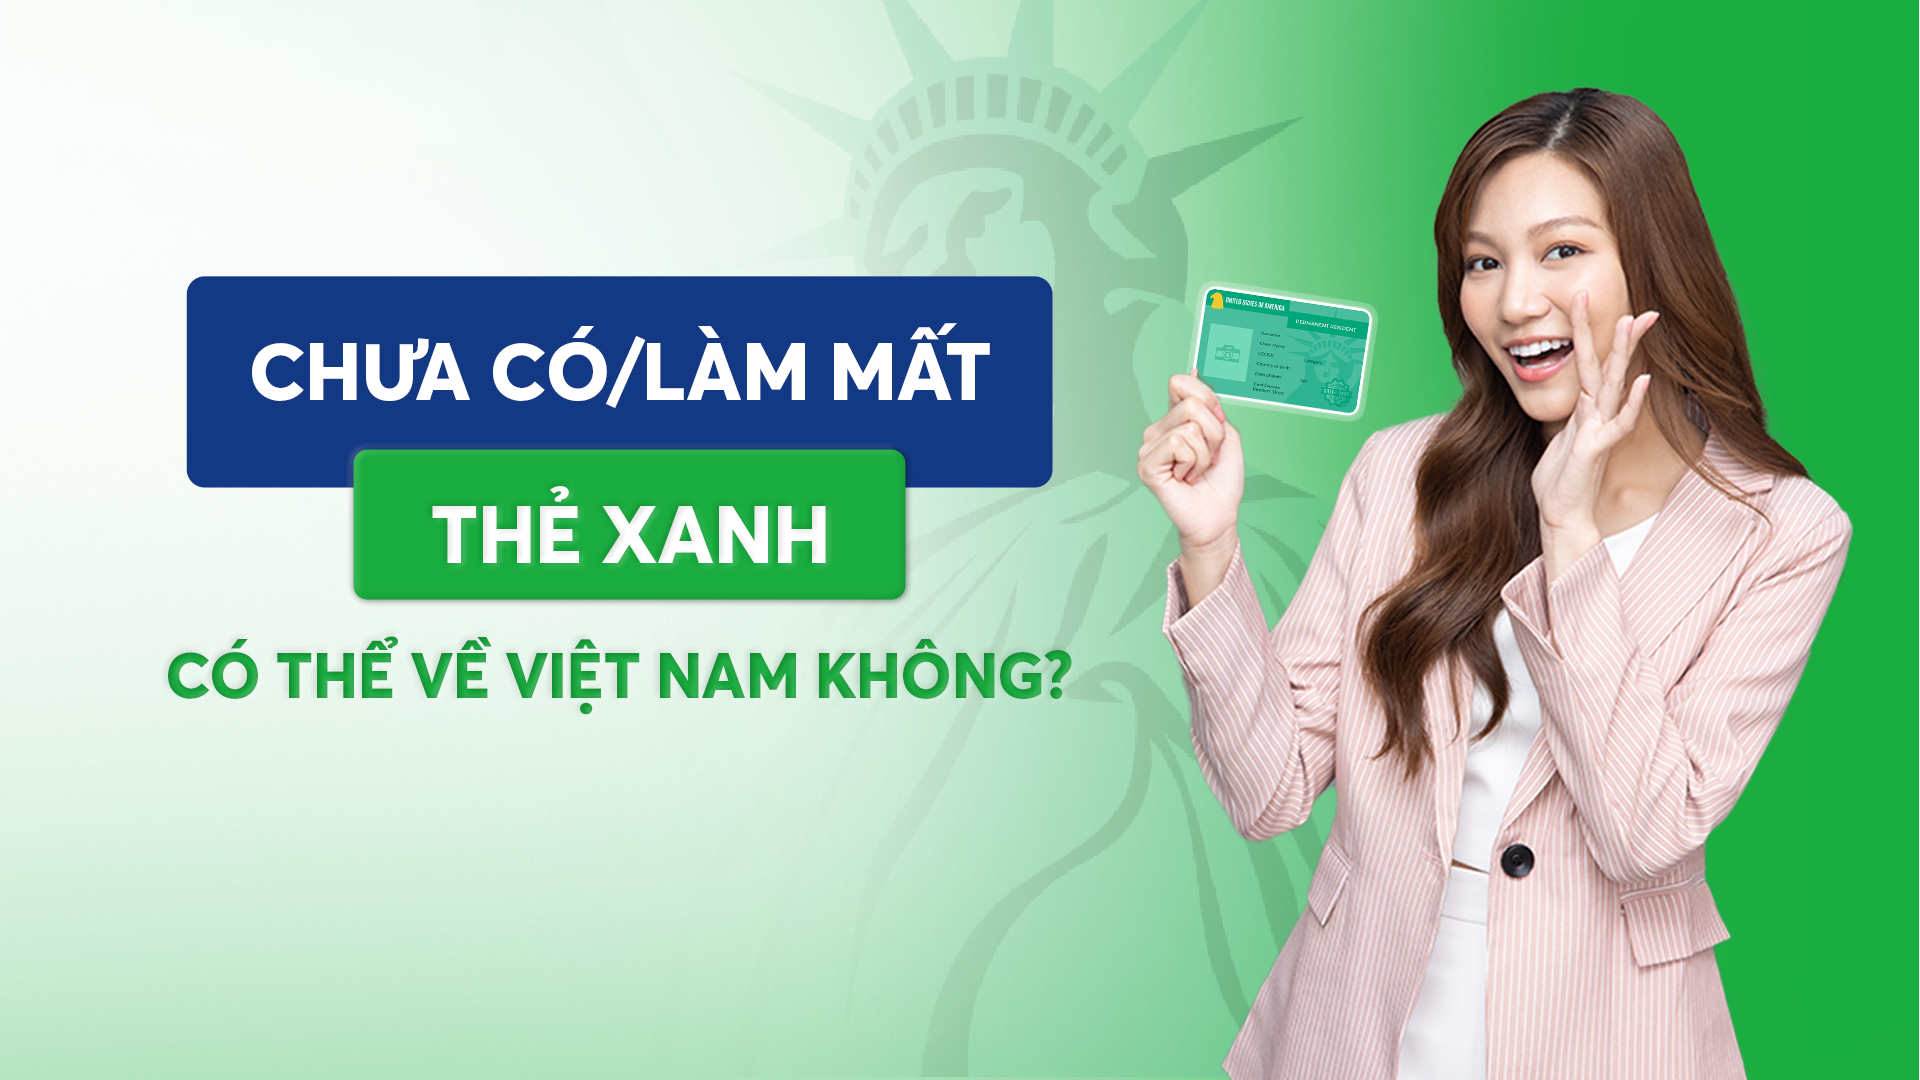 Chưa có hoặc mất thẻ xanh có thể về Việt Nam không